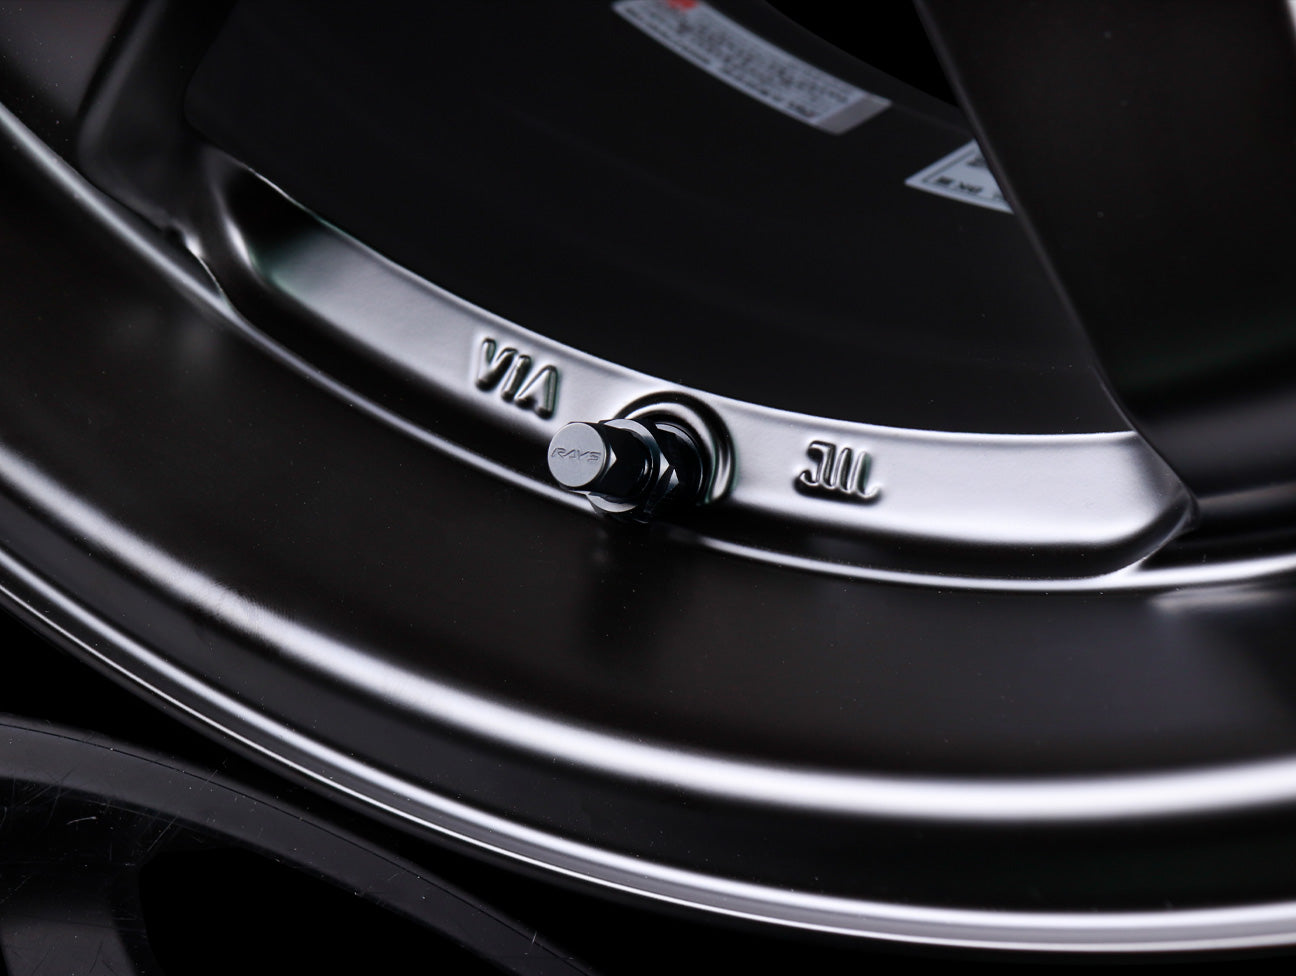 Volk Racing TE37SL Black Edition III Wheel - 18x9.5 / 5x114.3 / +39